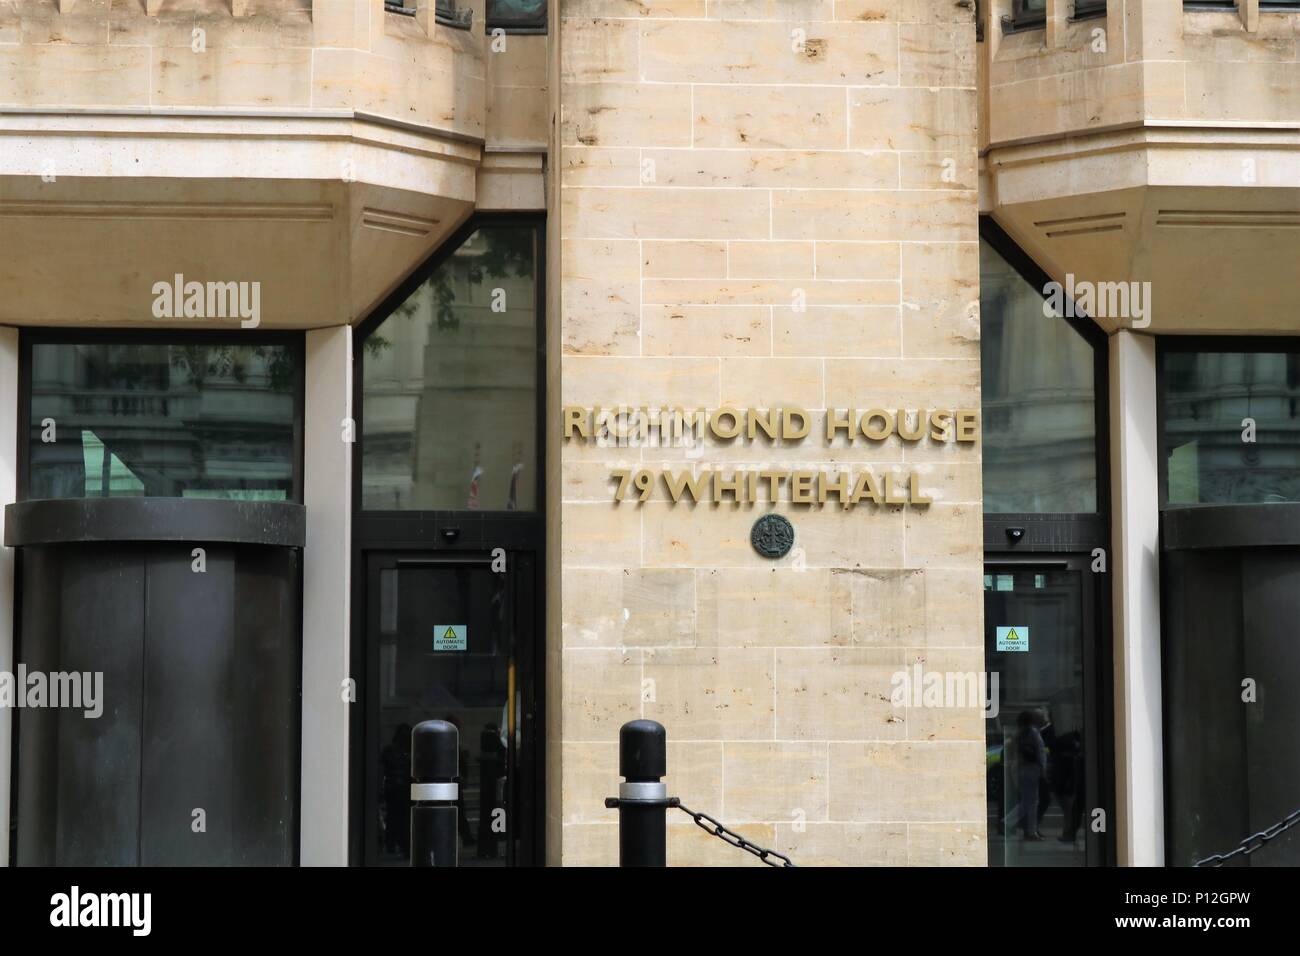 Richmond House, 79 Whitehall, London, Regno Unito - Palazzo del Governo Foto Stock